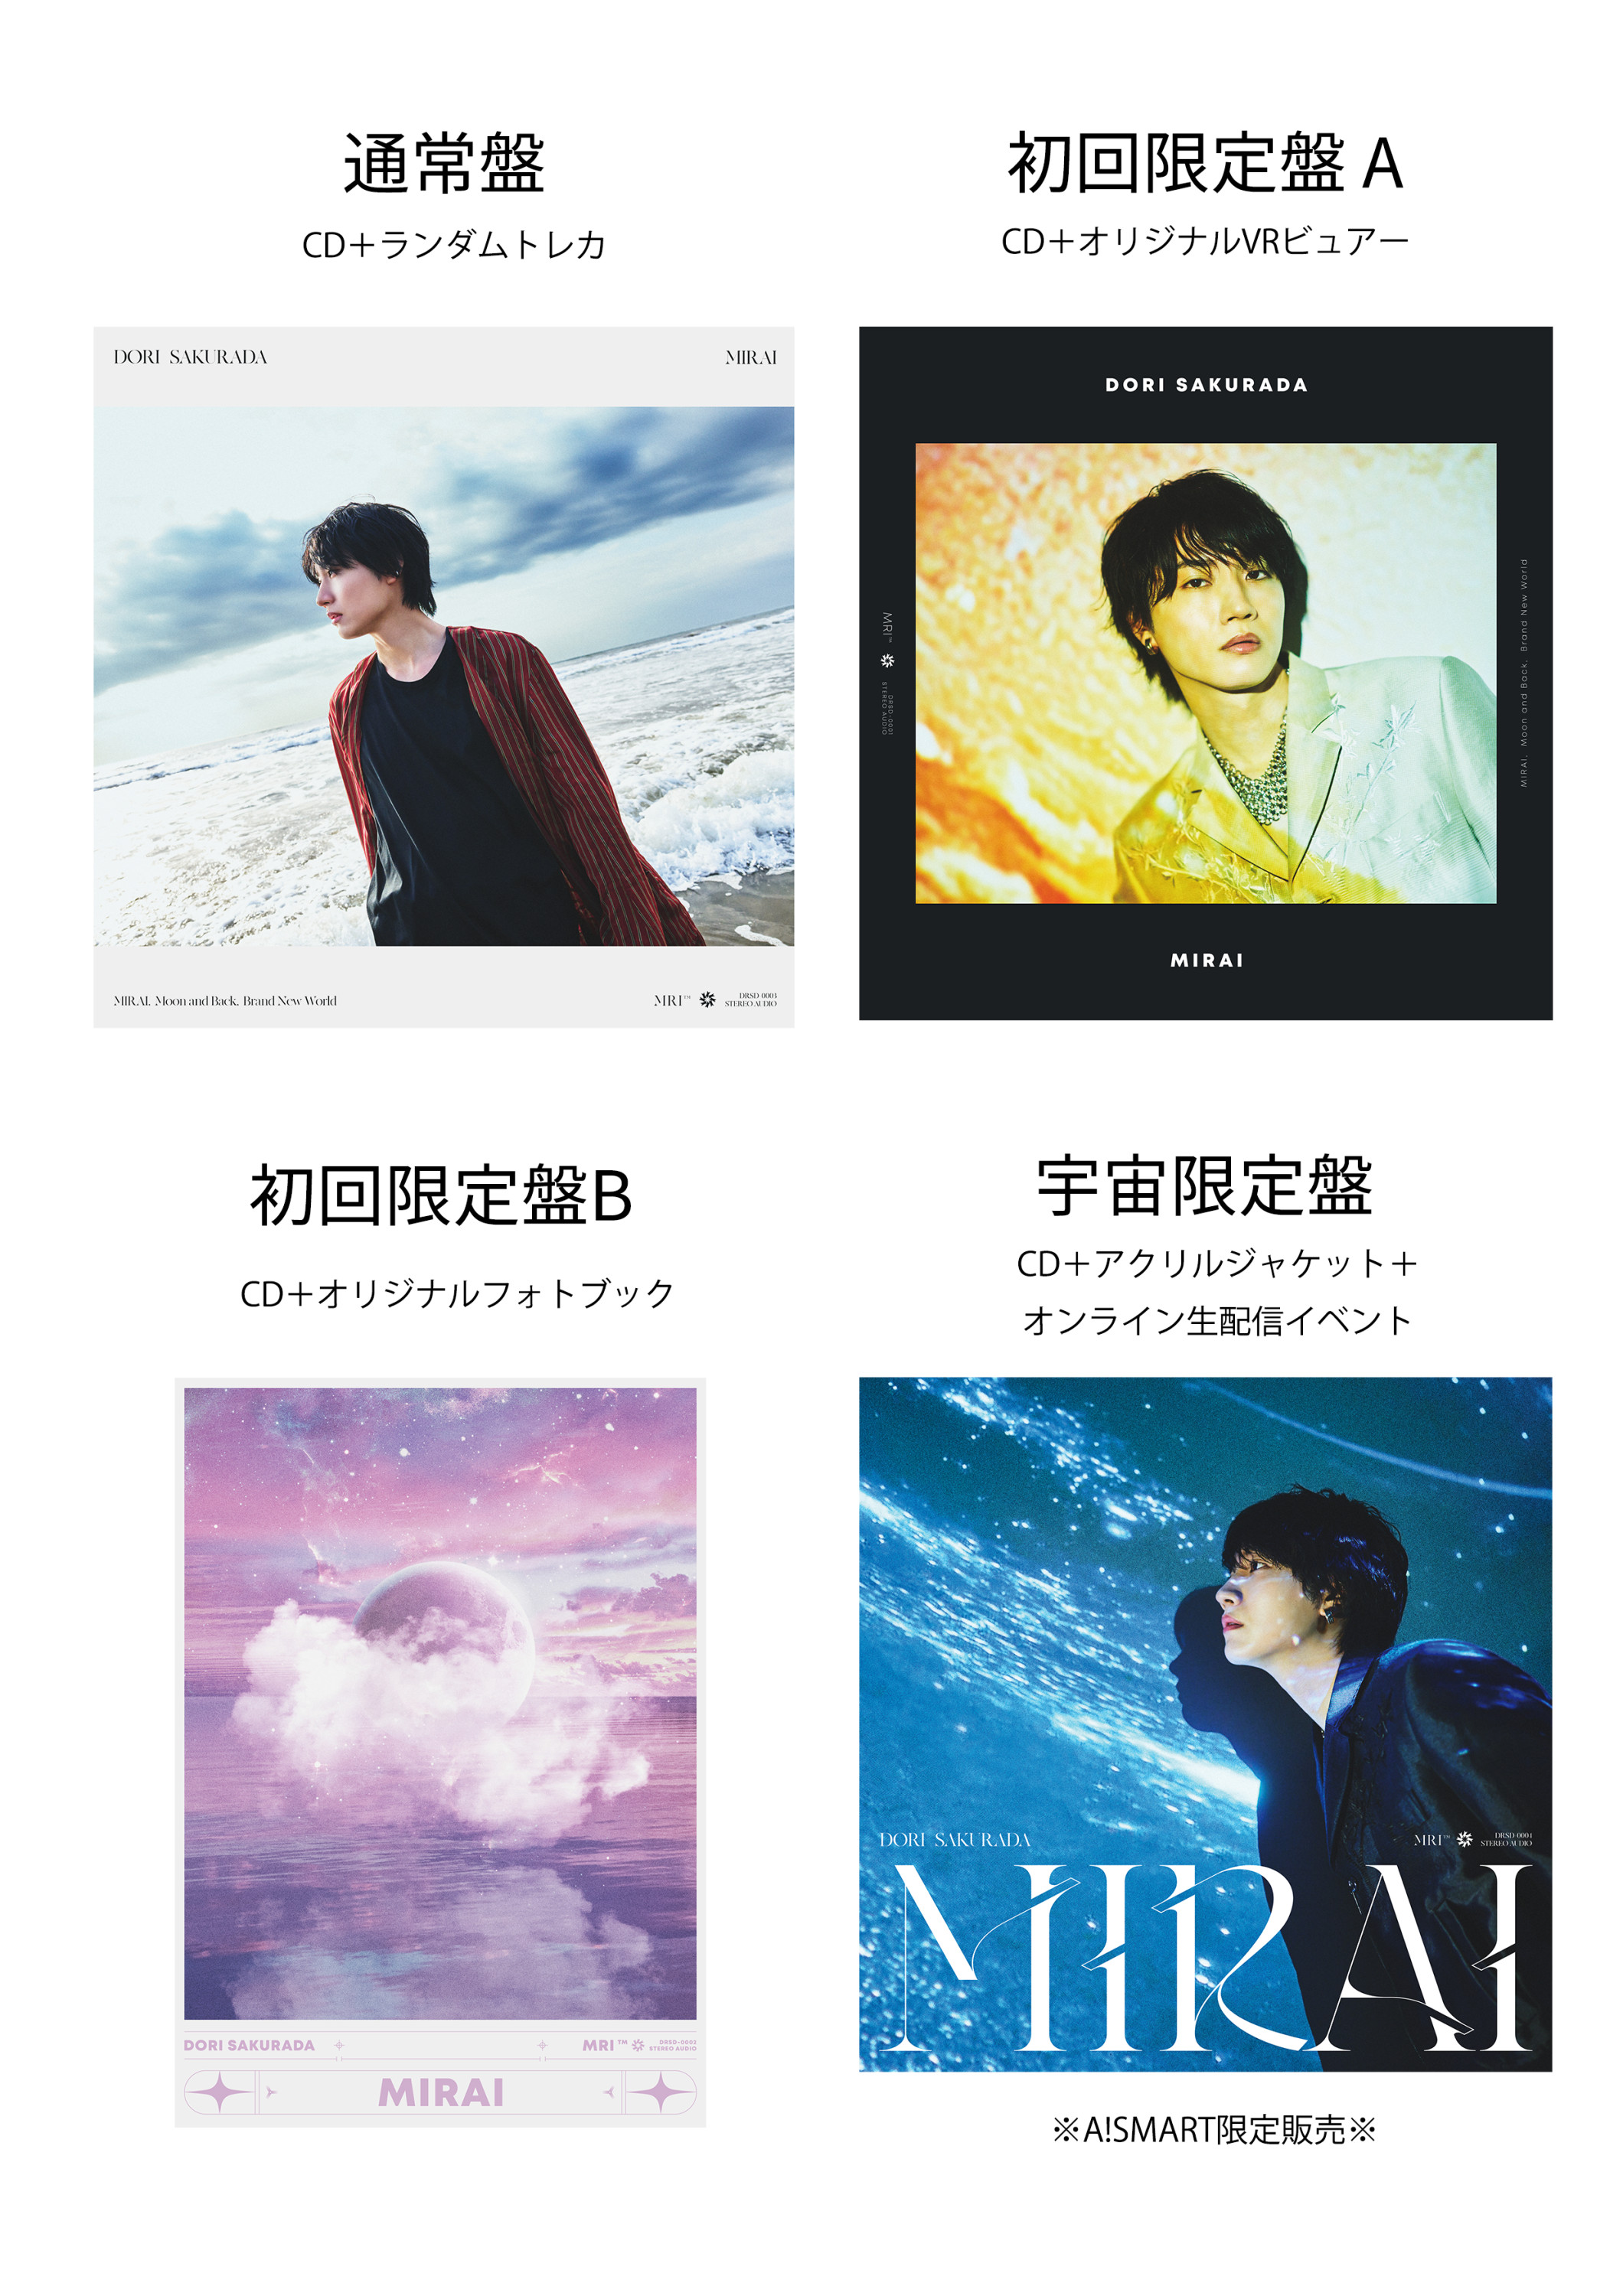 今春配信リリースしたデビューシングル「MIRAI」7月19日(水)CD発売決定